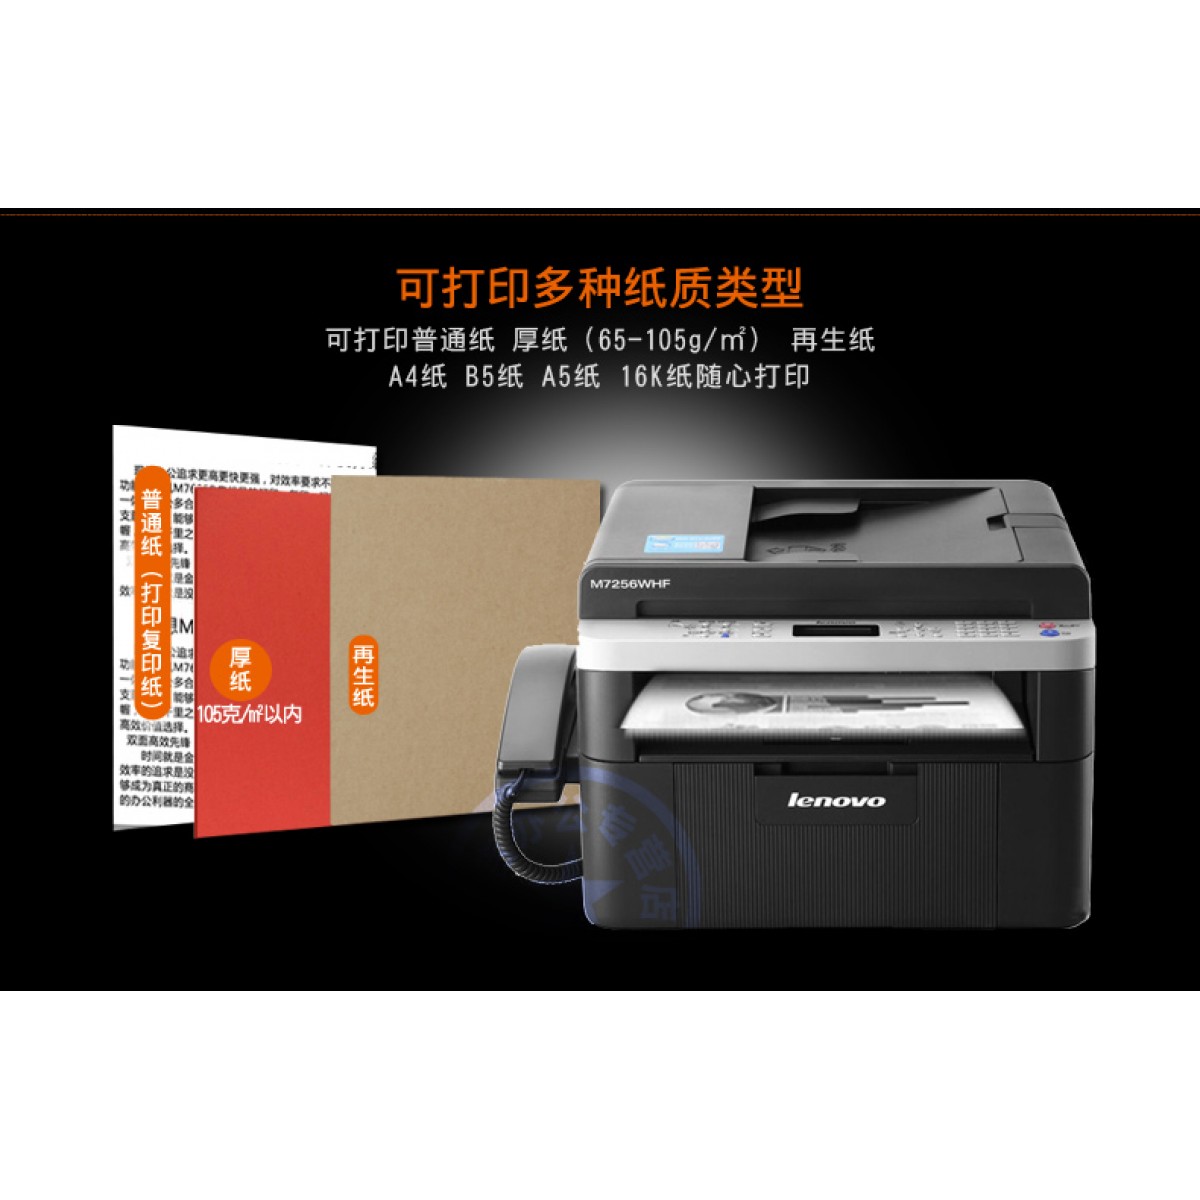 联想M7256WHF无线wifi激光打印机传真复印扫描电话一体机四合一打印机办公室 商务多功能